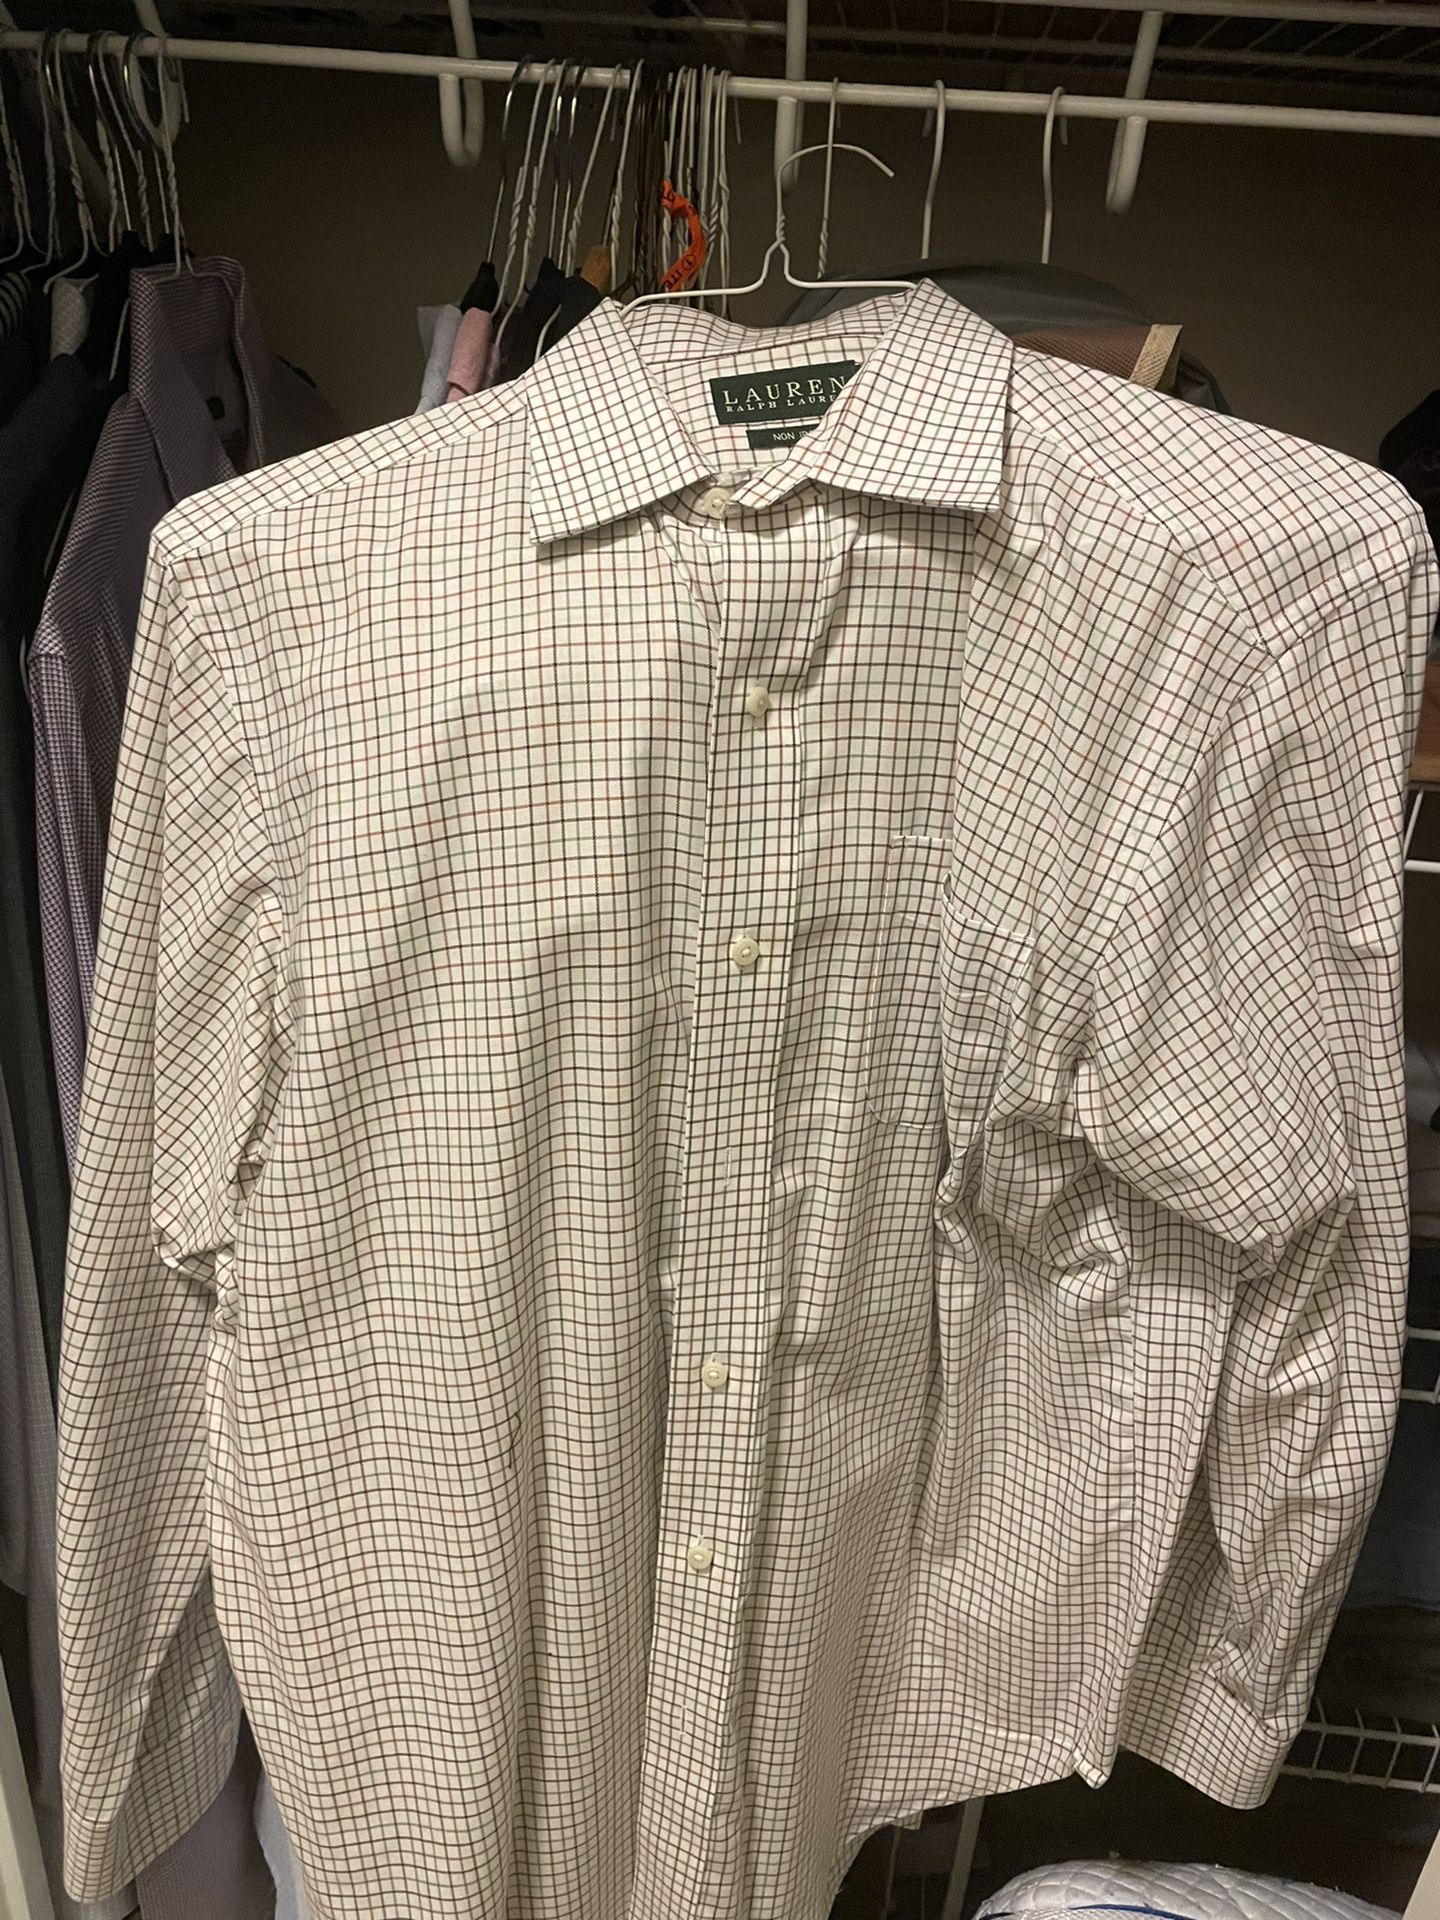 Ralph Lauren Dress Shirt - 34/35 (L) - Green/Brown Plaid - $40 OBO